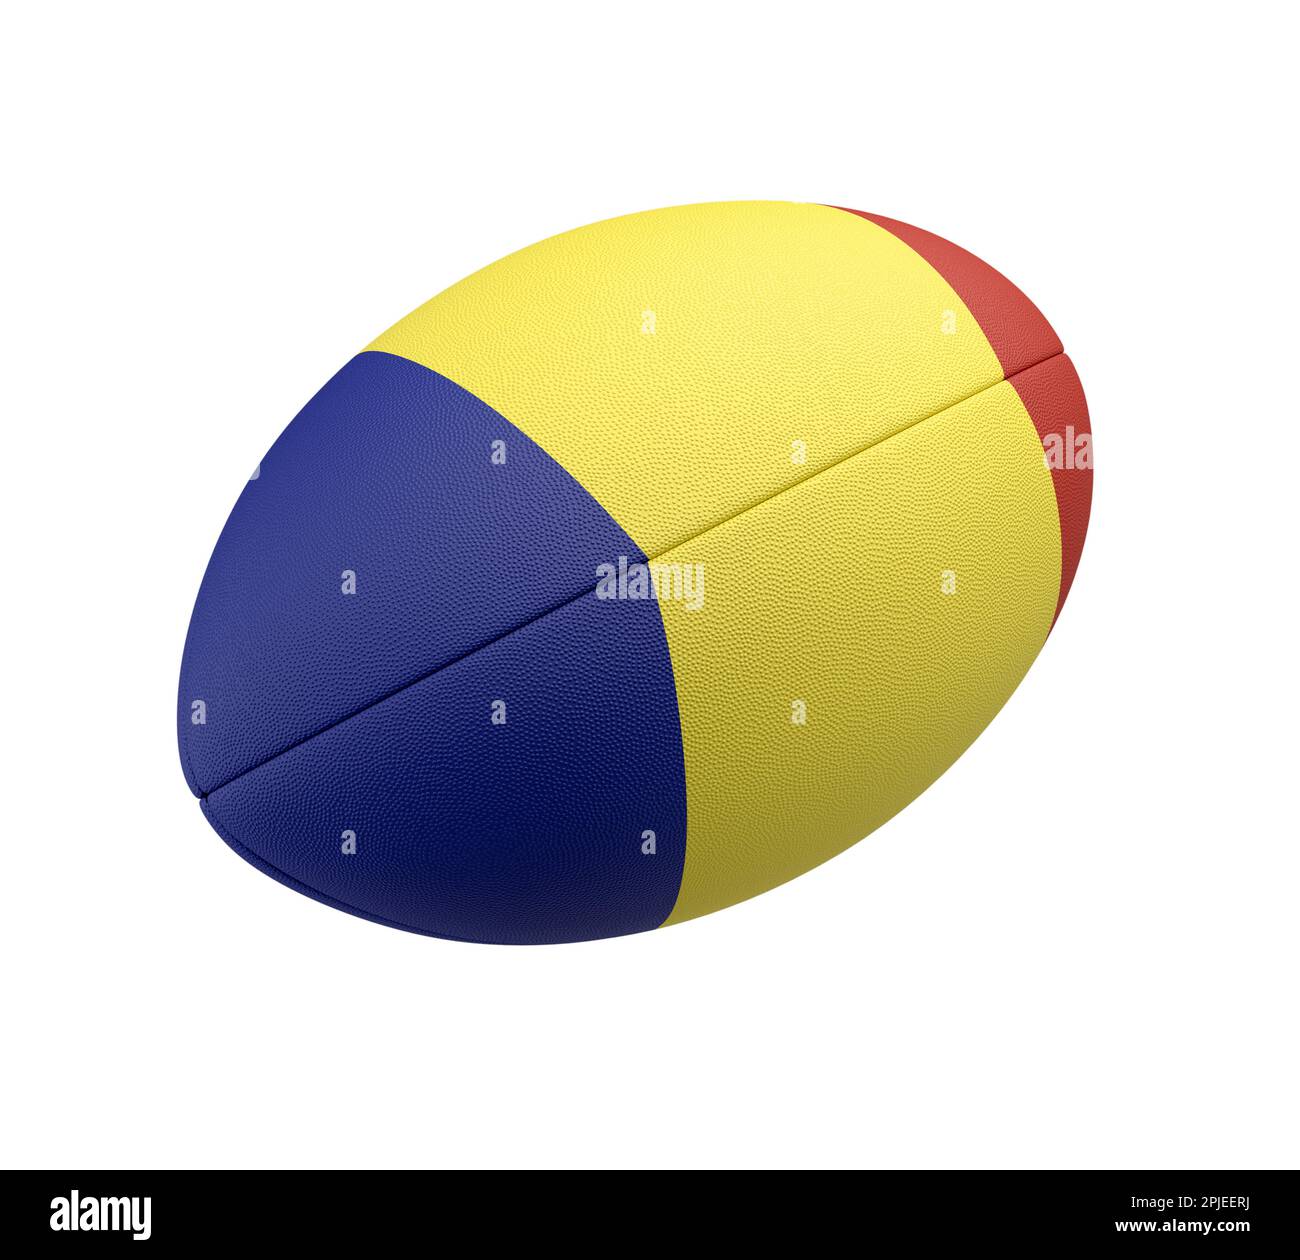 Ein weiß strukturierter Rugbyball mit Farbdesign, das die rumänische Nationalflagge auf einem isolierten Hintergrund darstellt - 3D-Rendering Stockfoto